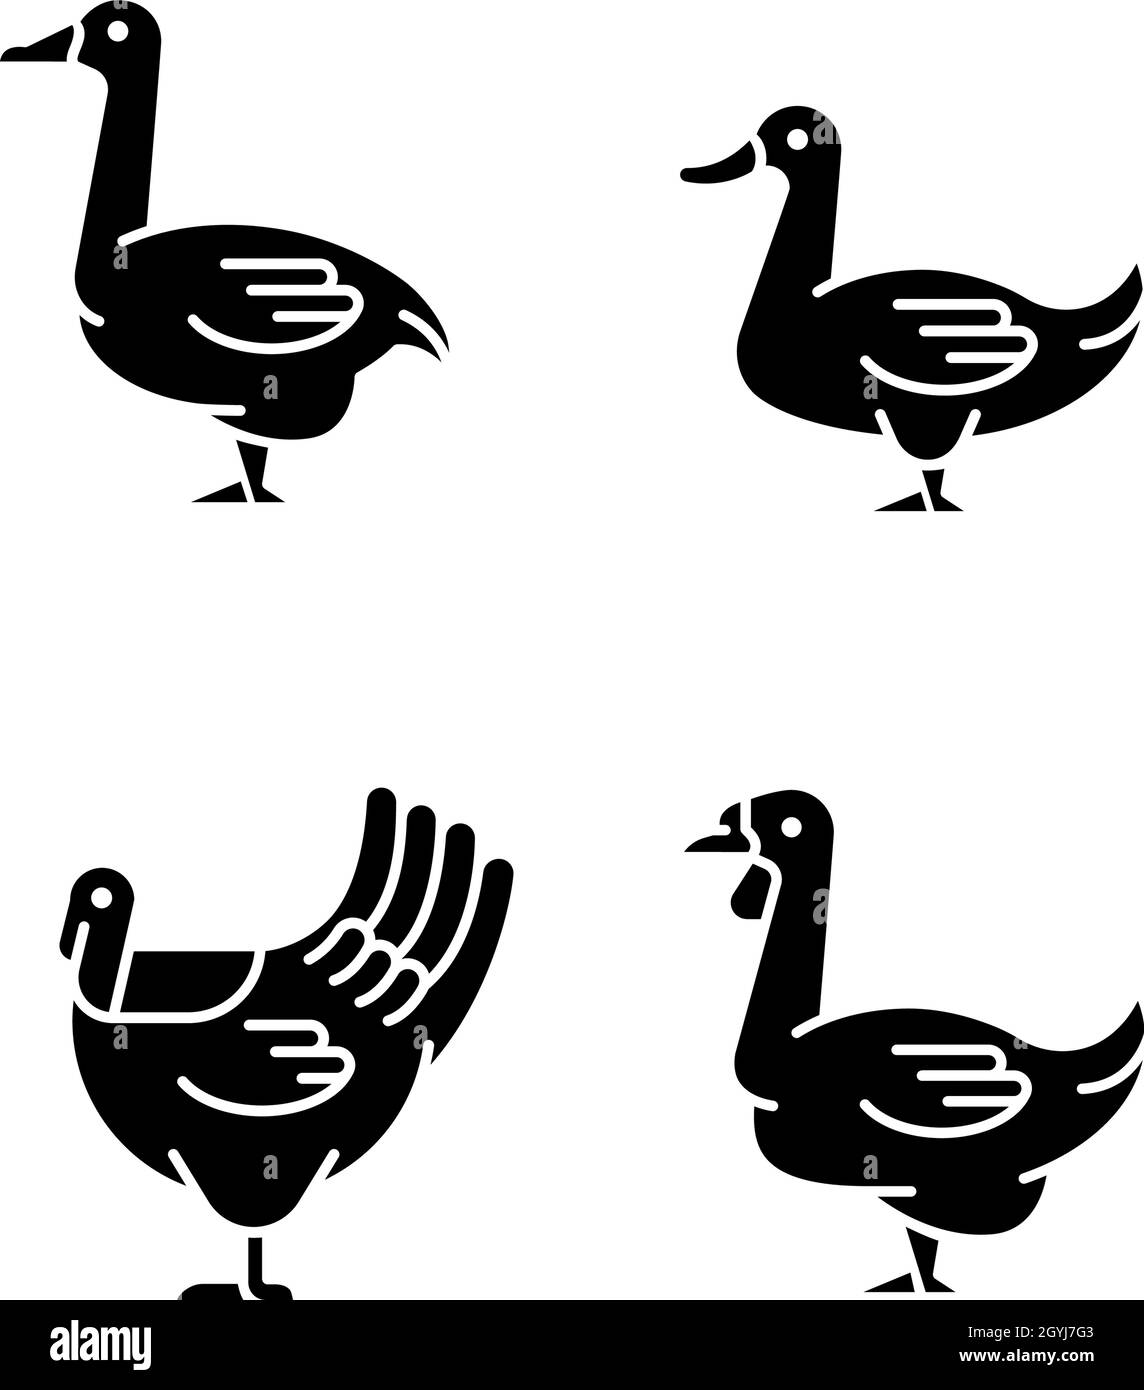 Wasservögel schwarze Glyphen-Symbole auf weißem Raum gesetzt Stock Vektor